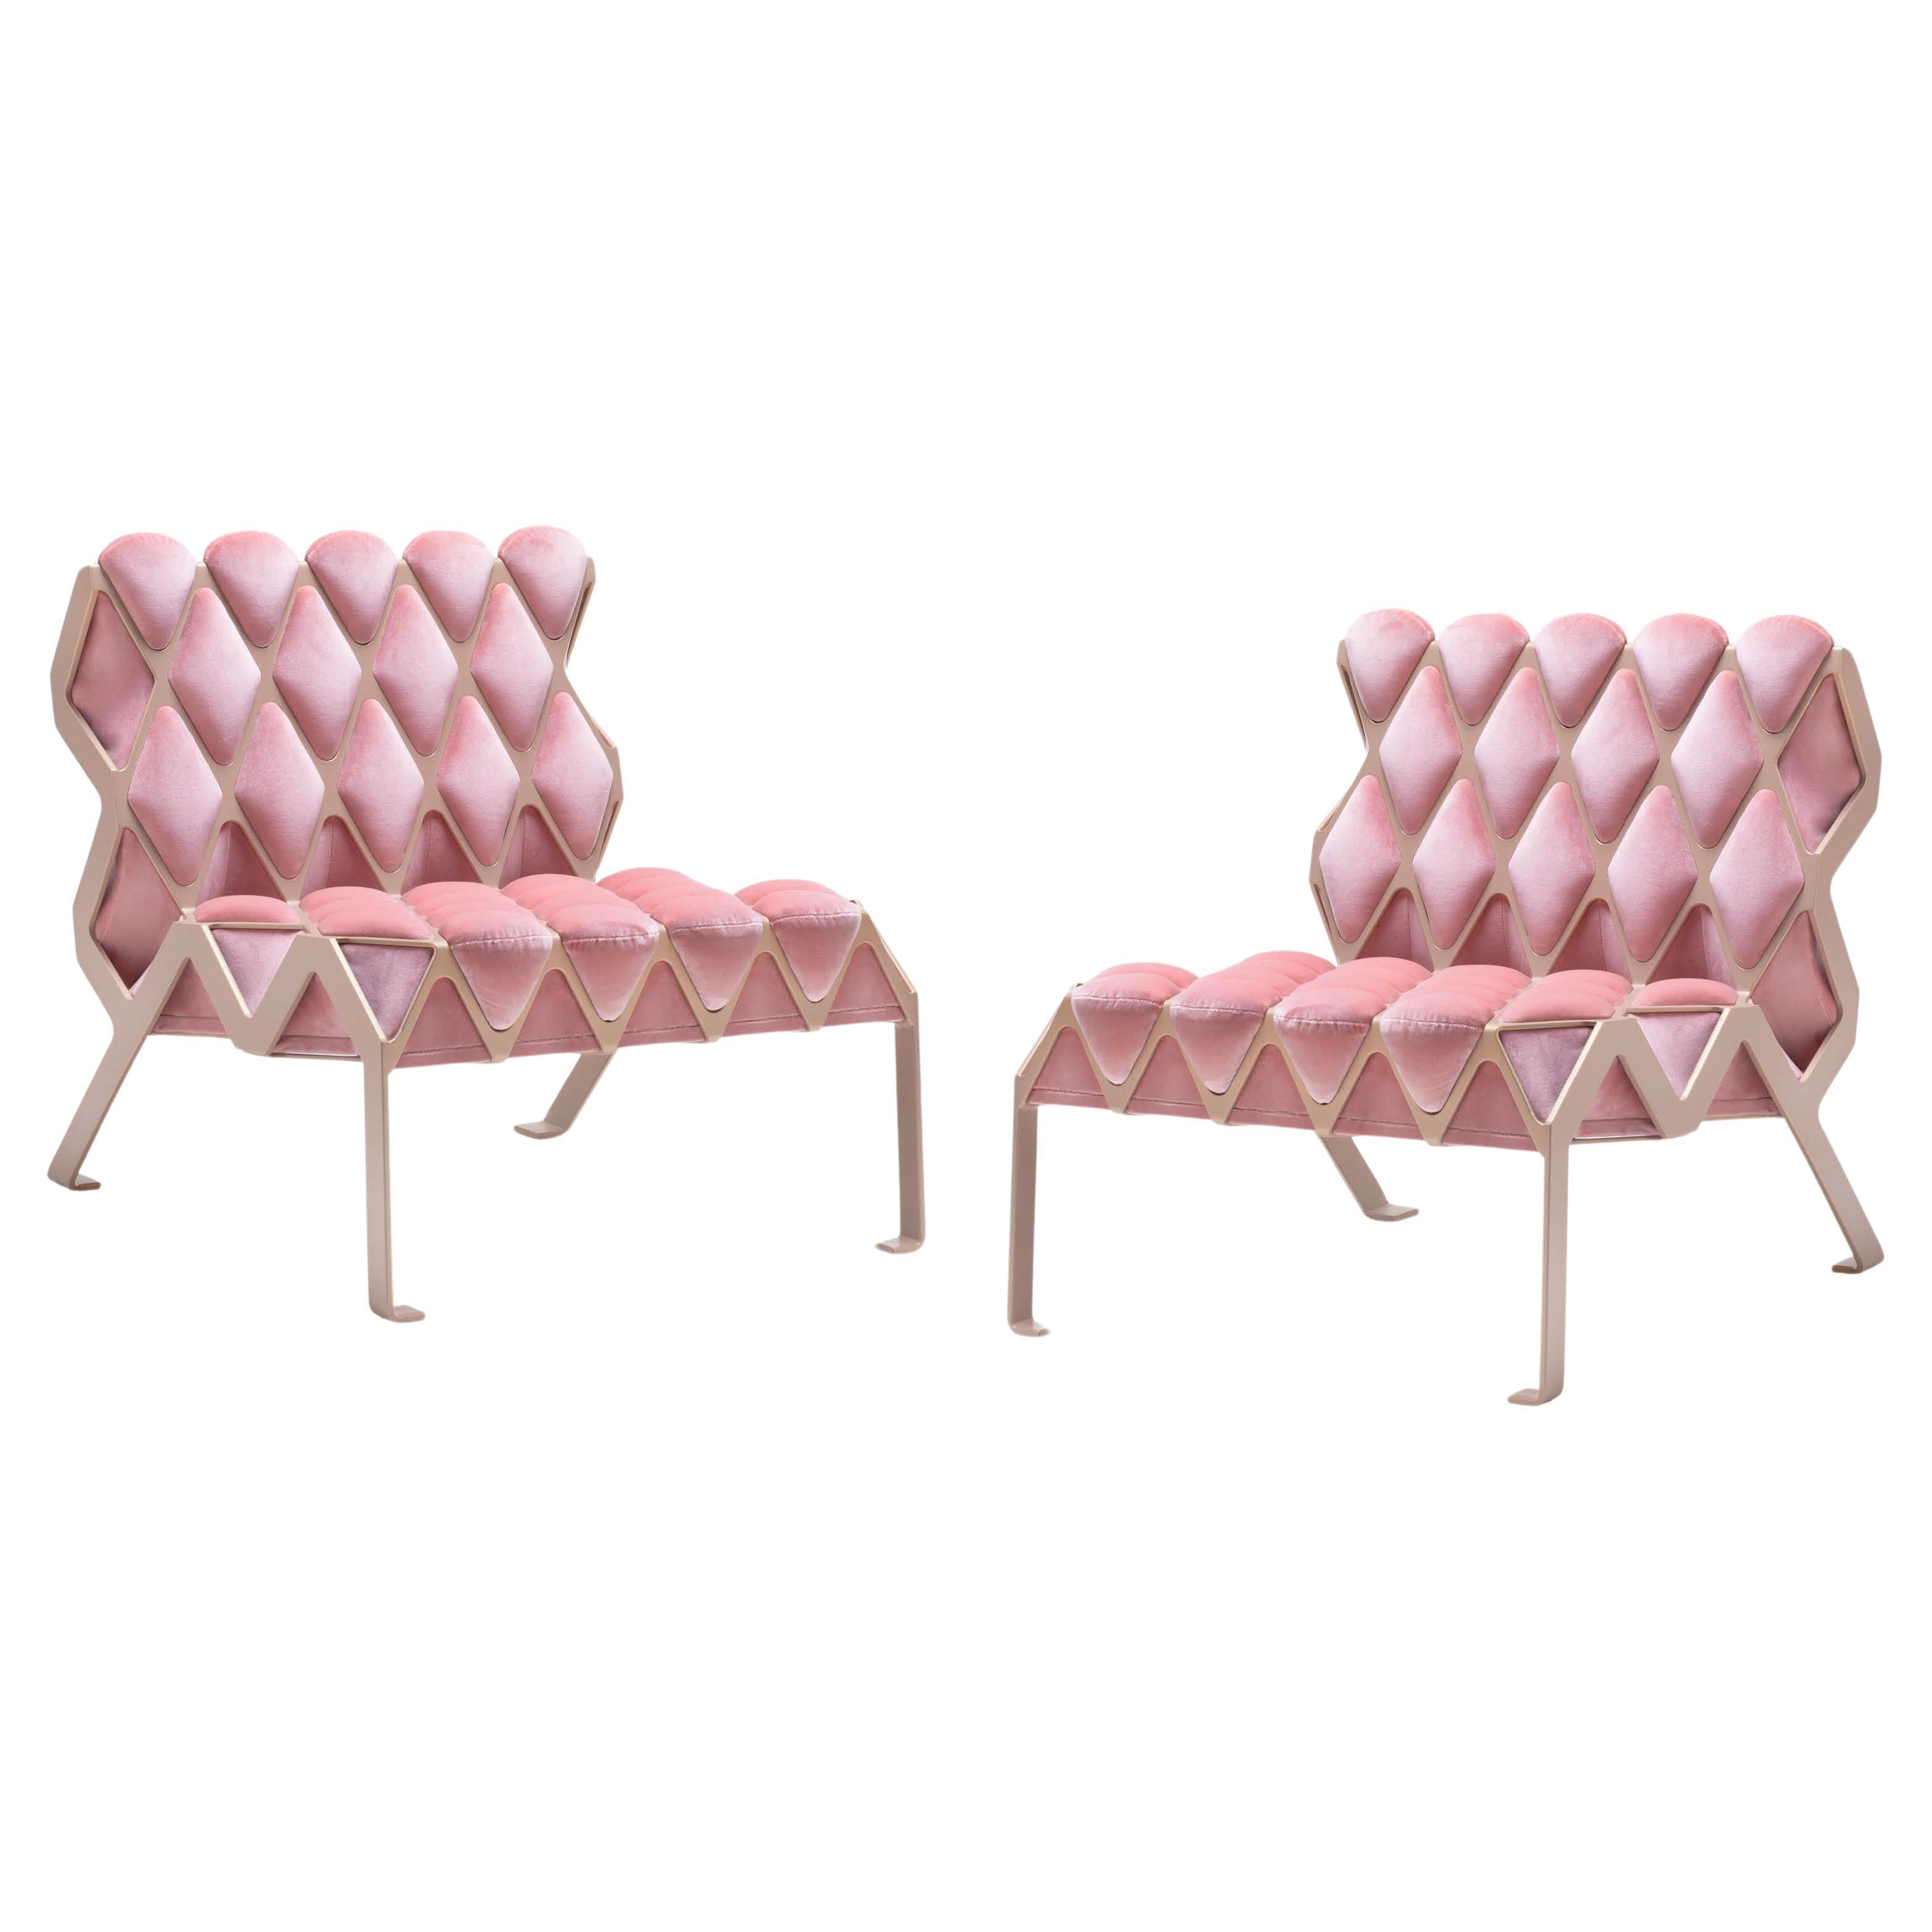 New And Custom Corner Chairs